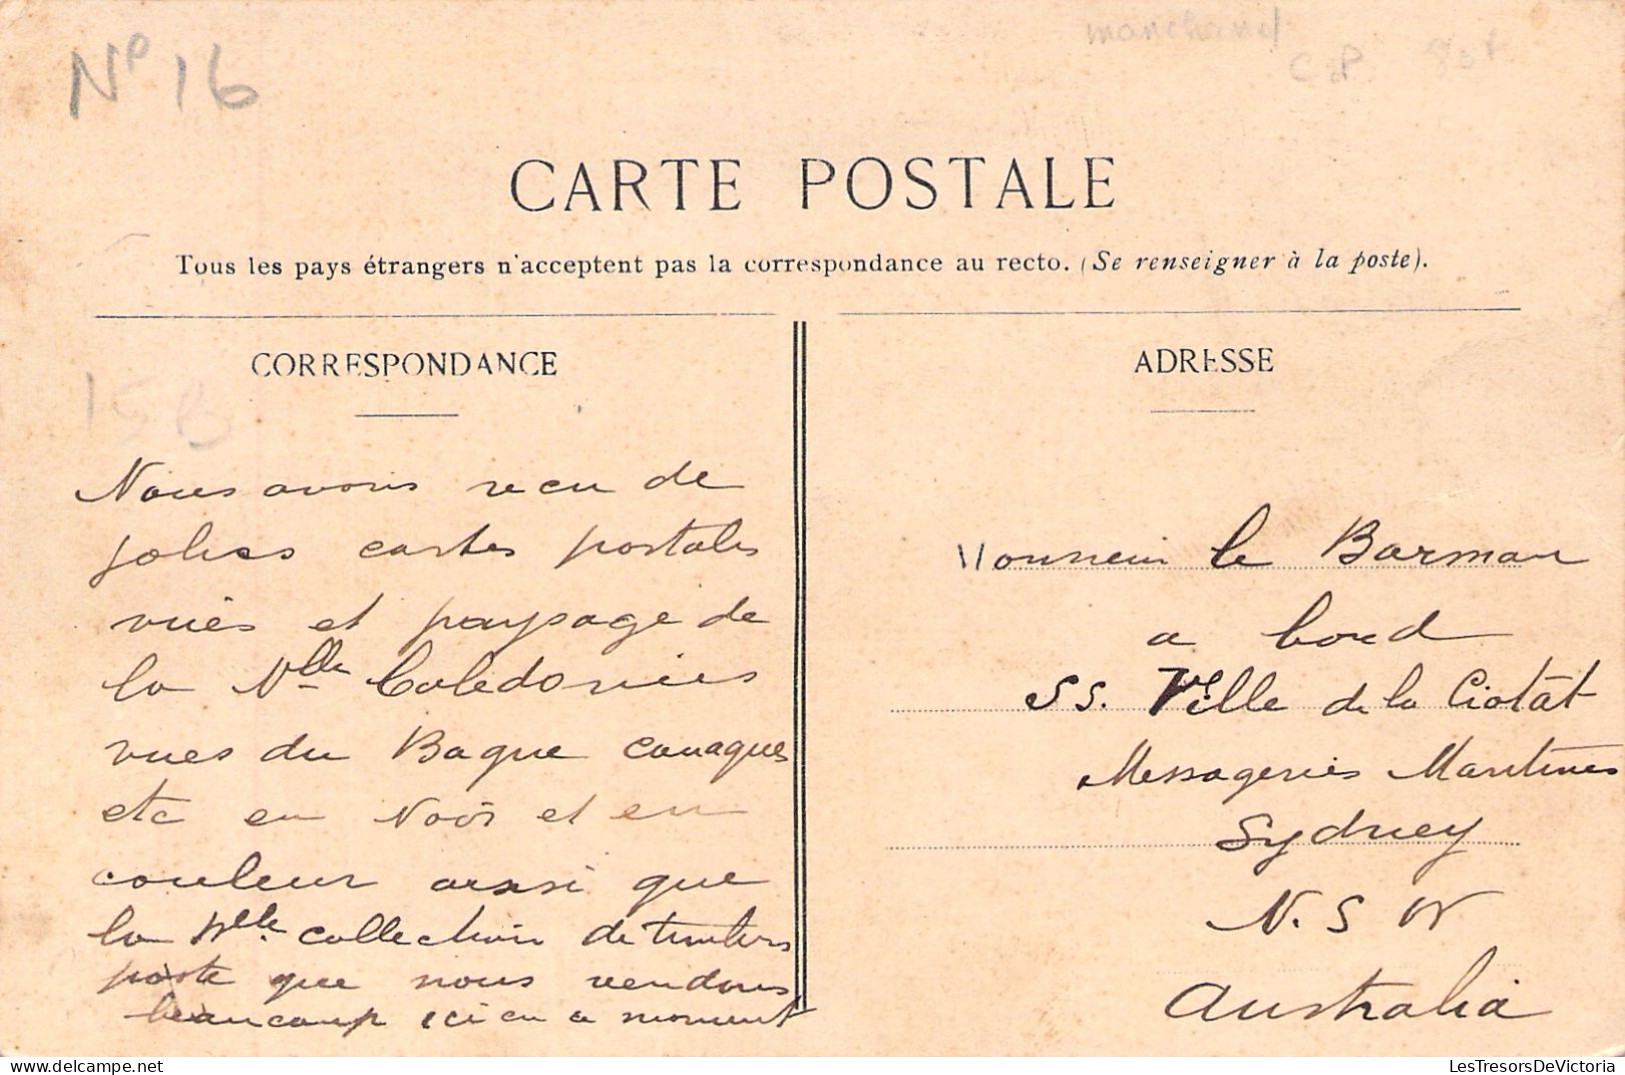 NOUVELLE CALEDONIE - NOUMEA - Magasin De Modes Et Confection - Bureau De Tabac - Carte Postale Ancienne - New Caledonia